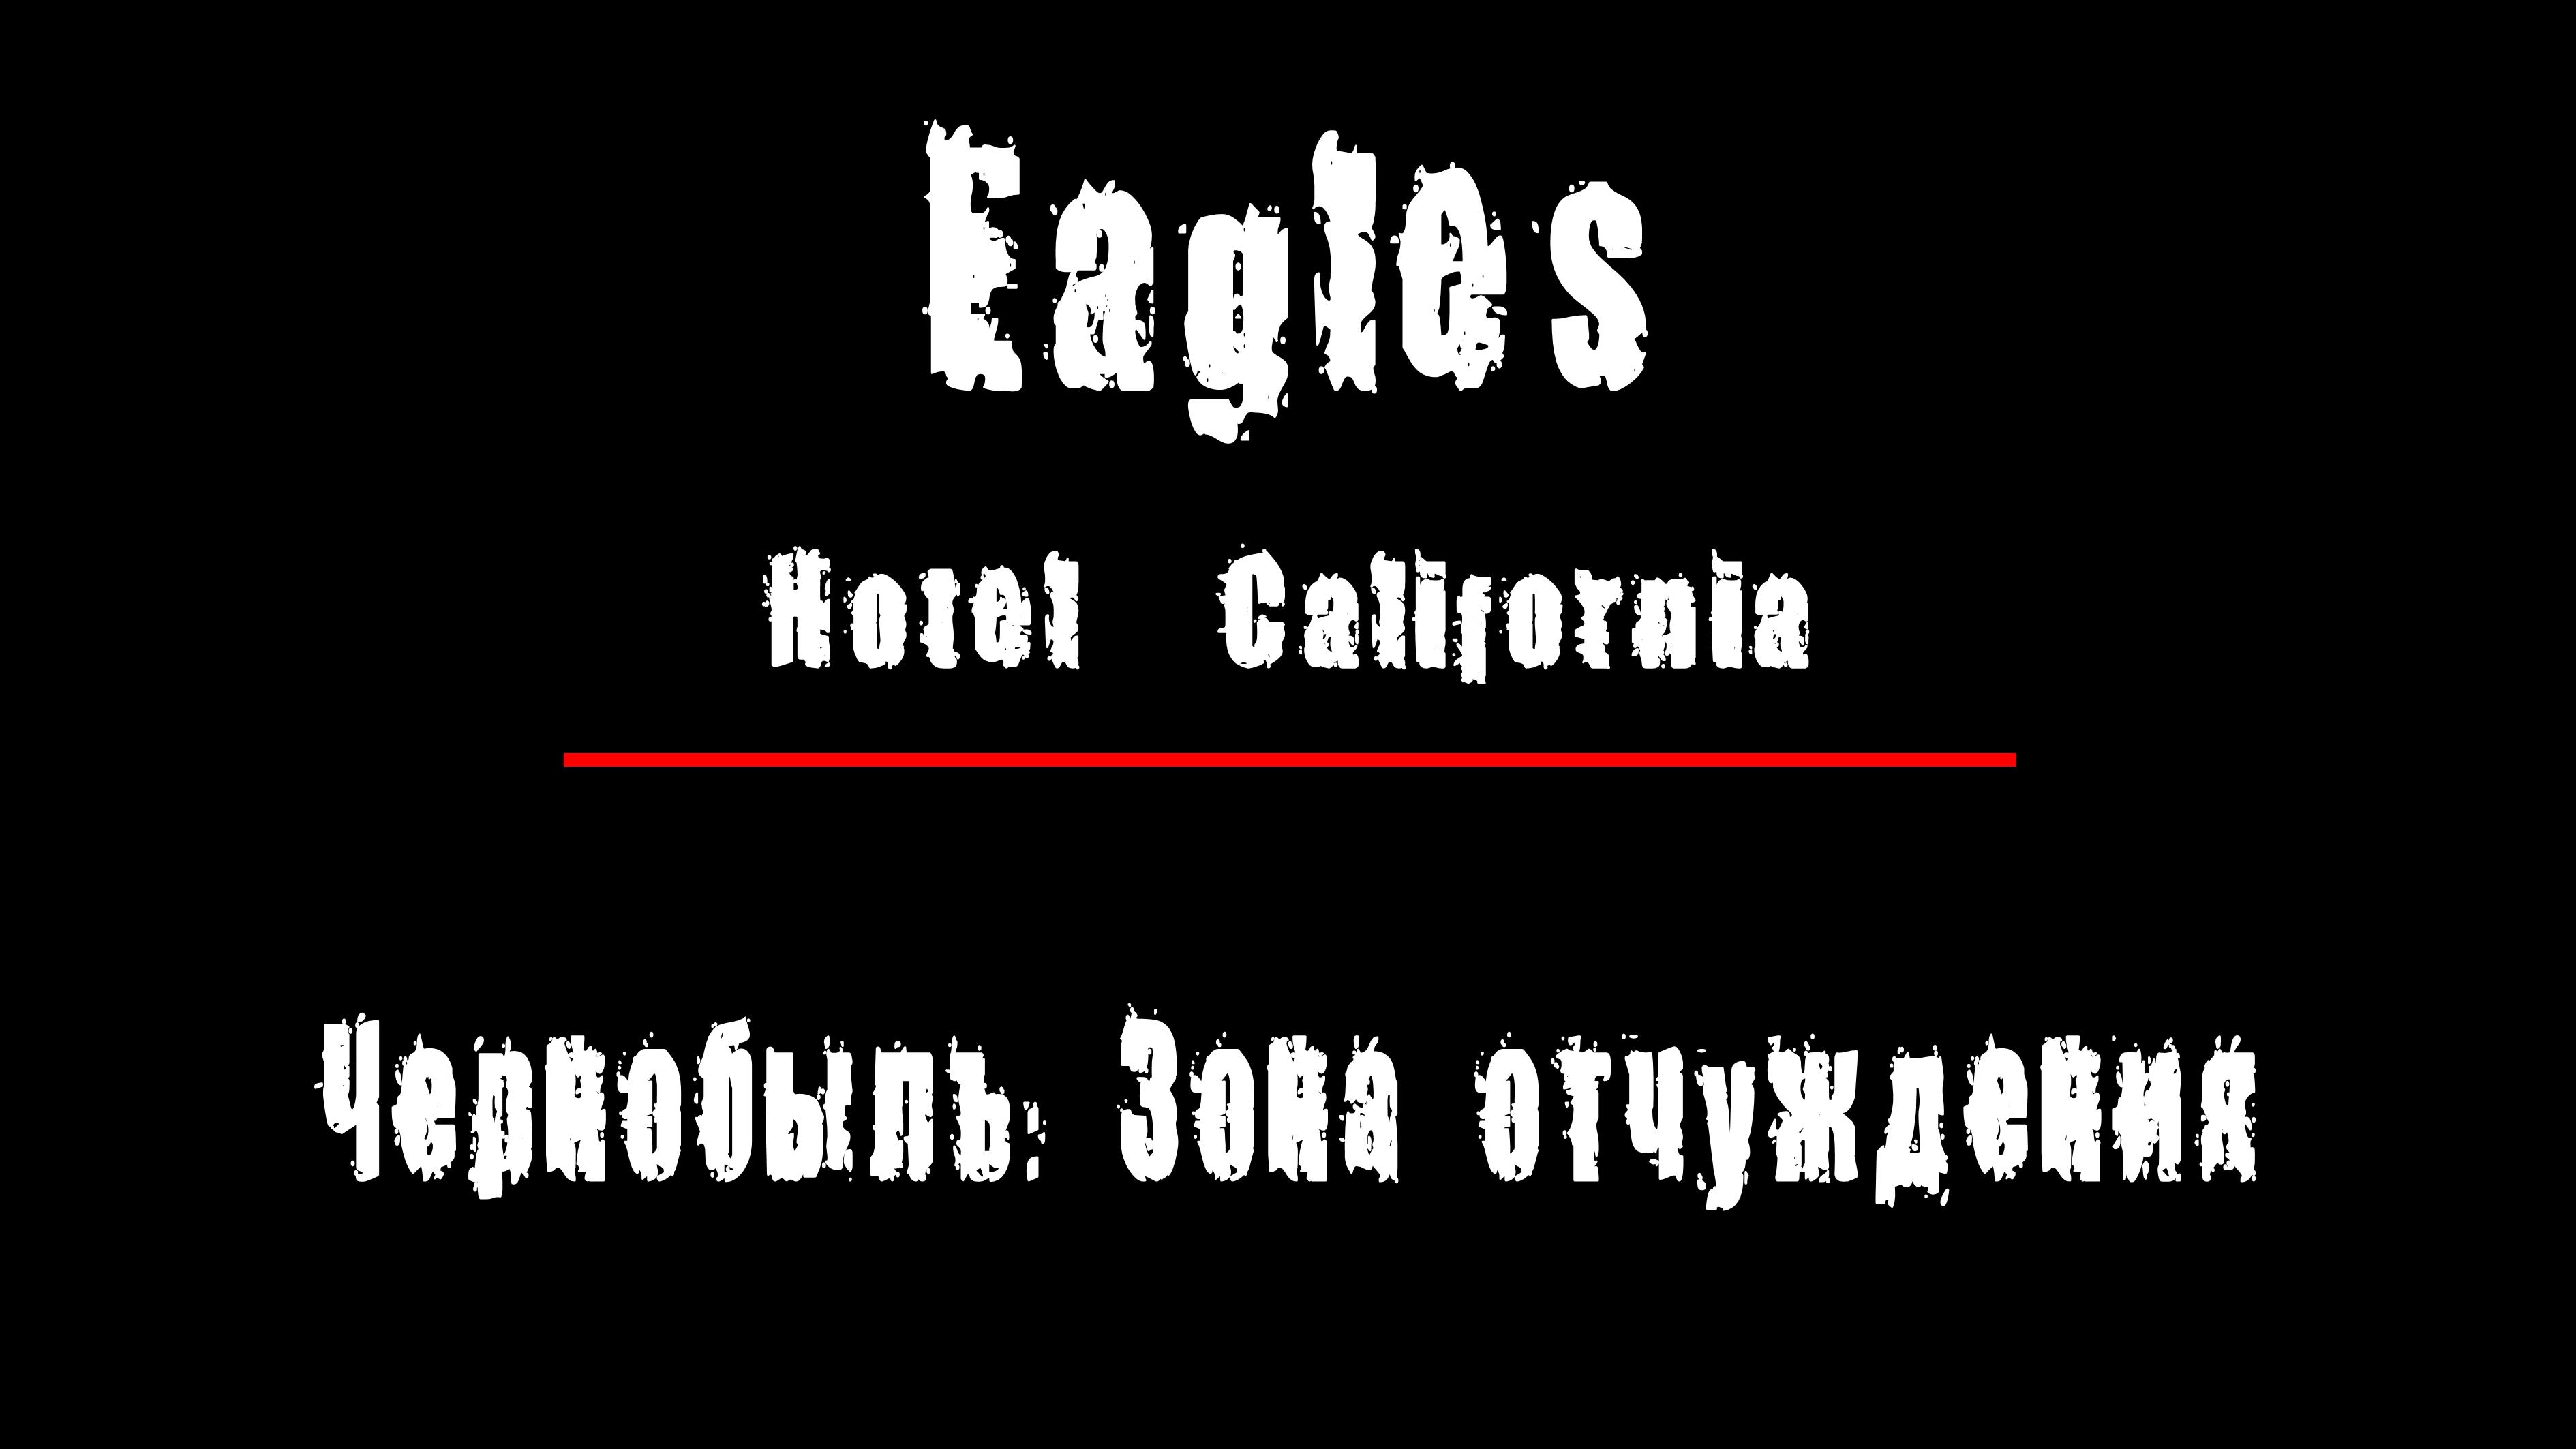 "HOTEL CALIFORNIA" - LIVE(живой звук) - группа "Eagles". Чернобыль: Зона Отчуждения, Припять.